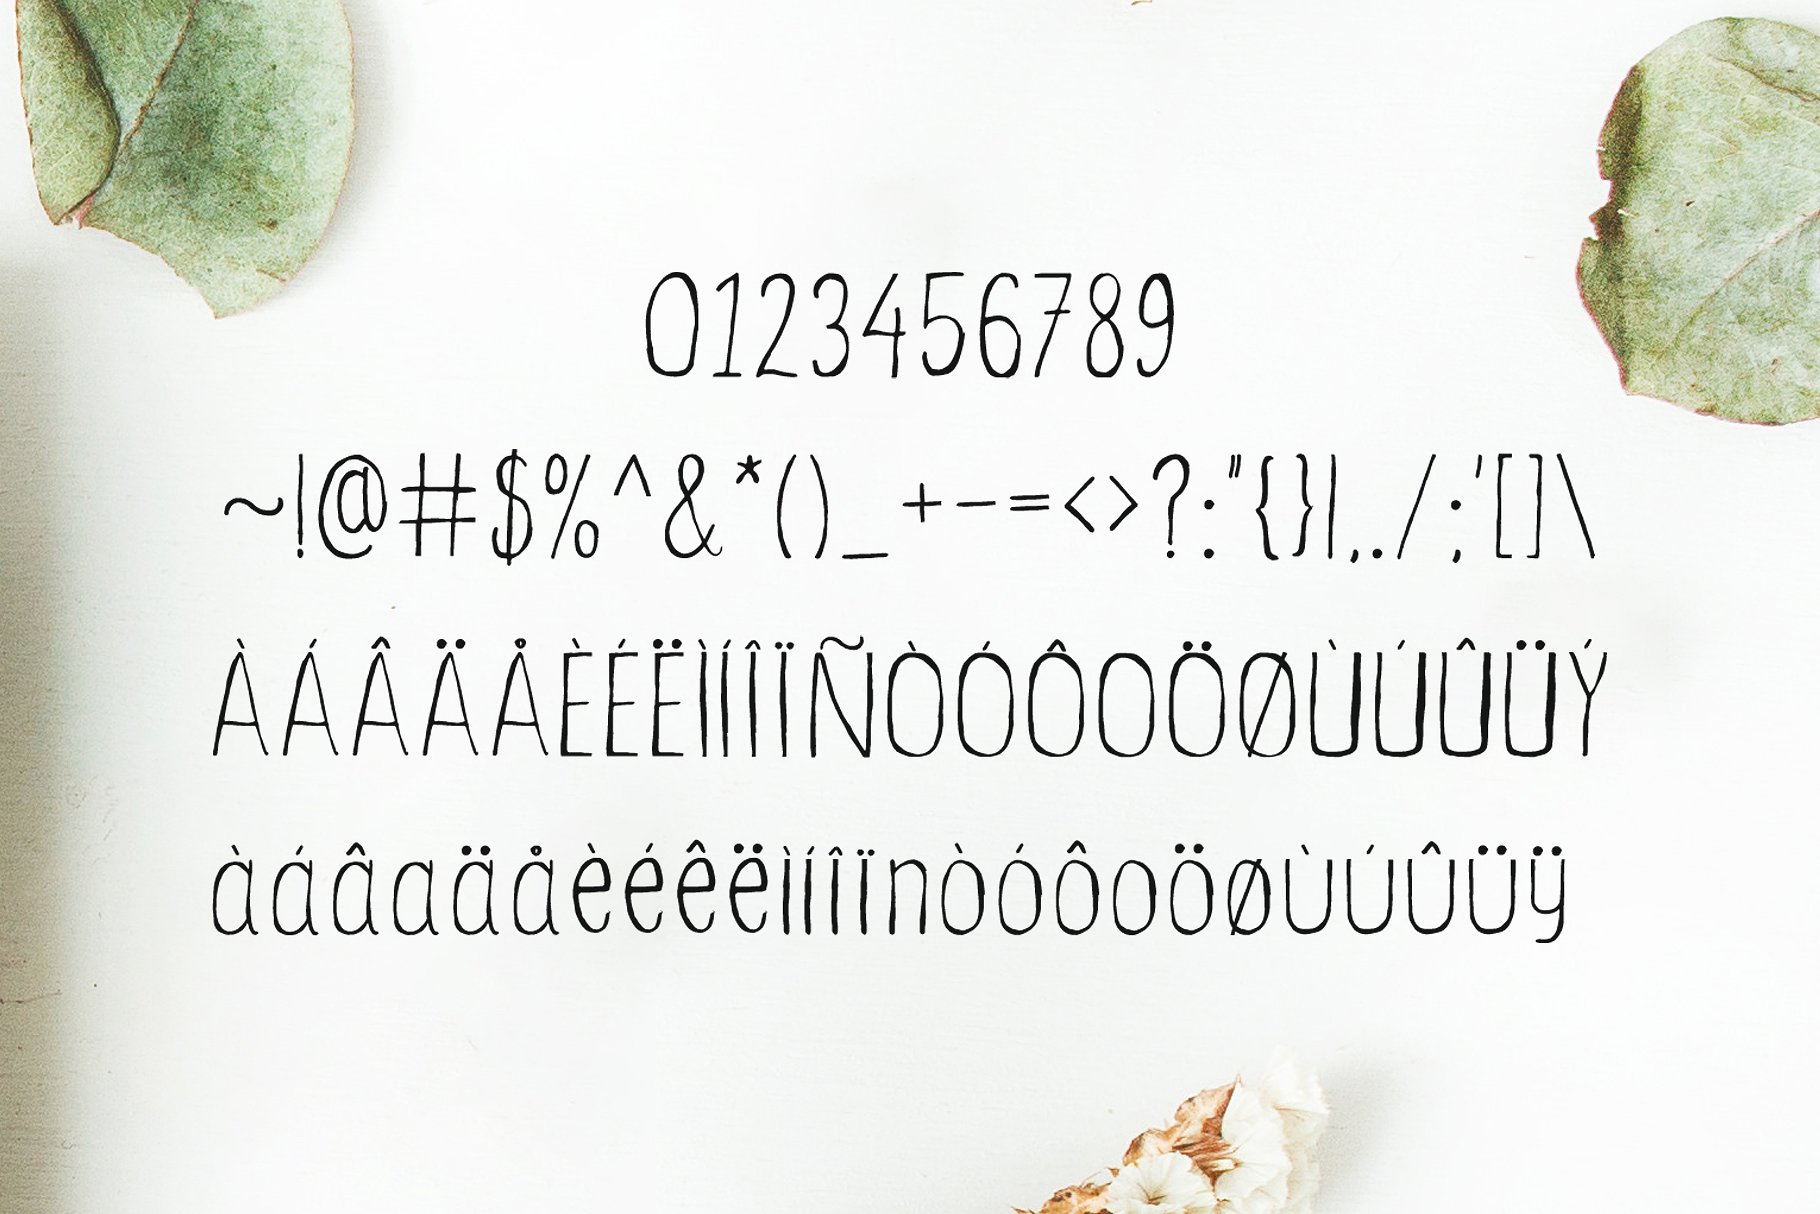 优雅的手写英文字体及手绘花叶花圈素材 Ceica Handwritten Duo Font插图(4)